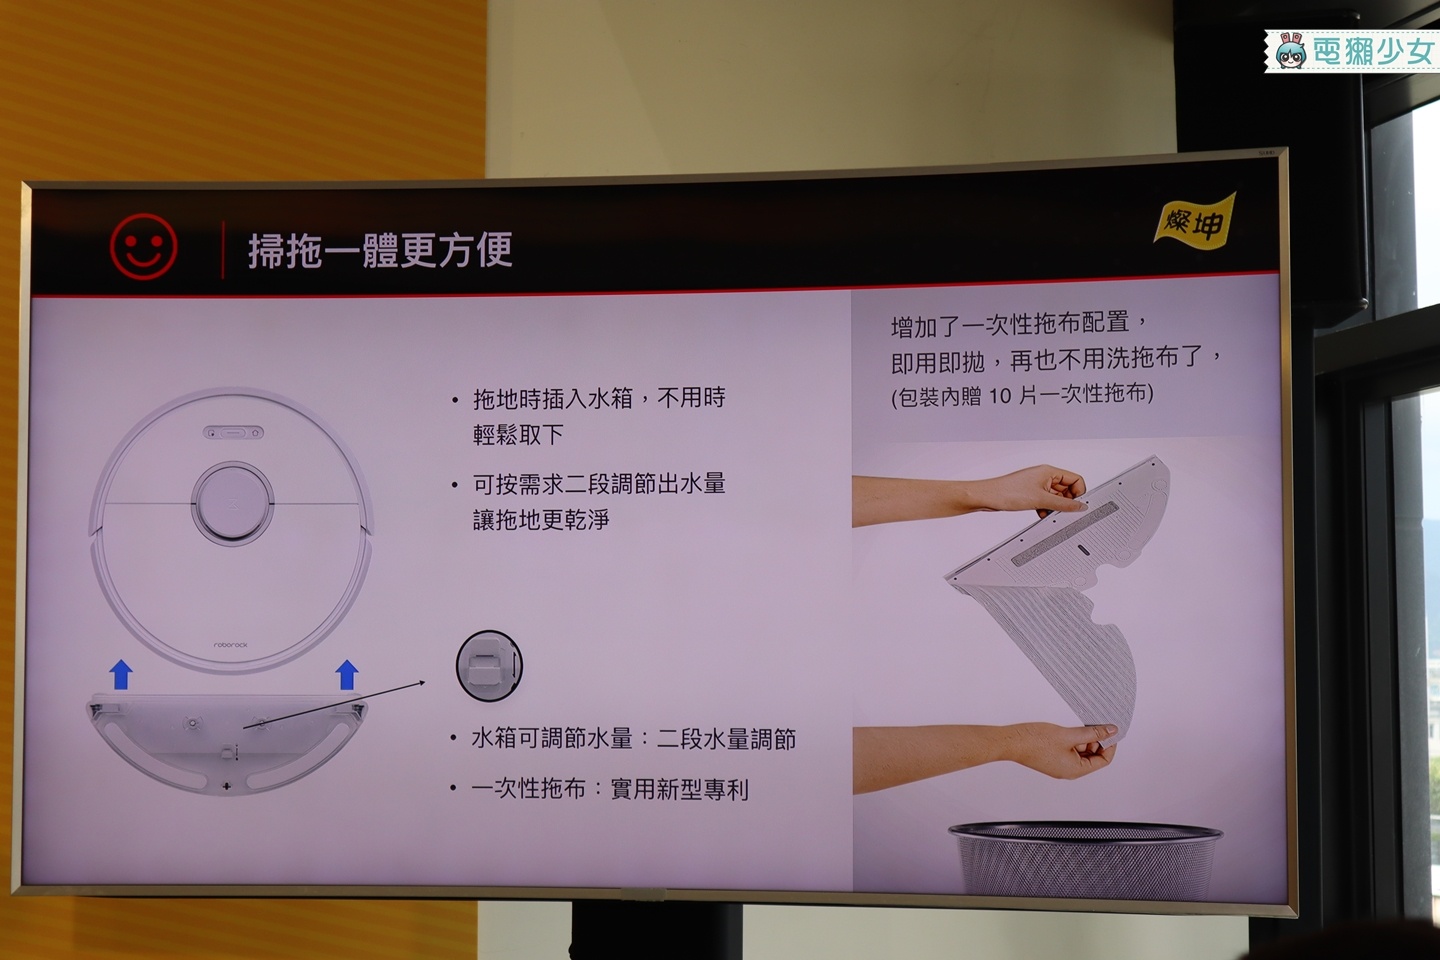 出門｜燦坤首賣石頭掃拖合一機器人S6  有預購優惠價再送30片一次性拖布